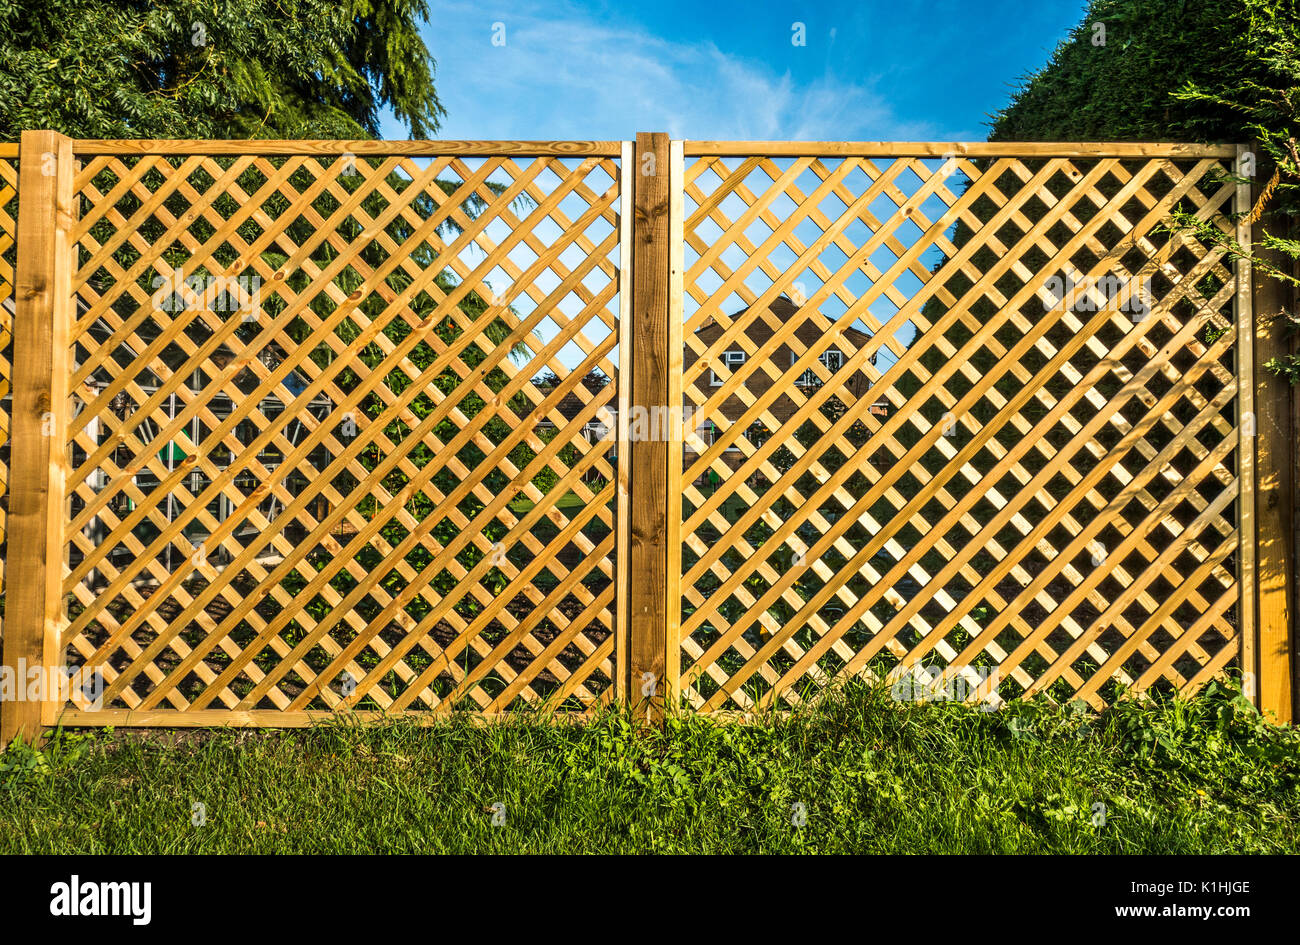 Voir à travers deux treillis en bois, panneaux de clôture, avec une chambre à l'arrière-plan, de manière à ne pas masquer la vue. Angleterre, Royaume-Uni. Banque D'Images